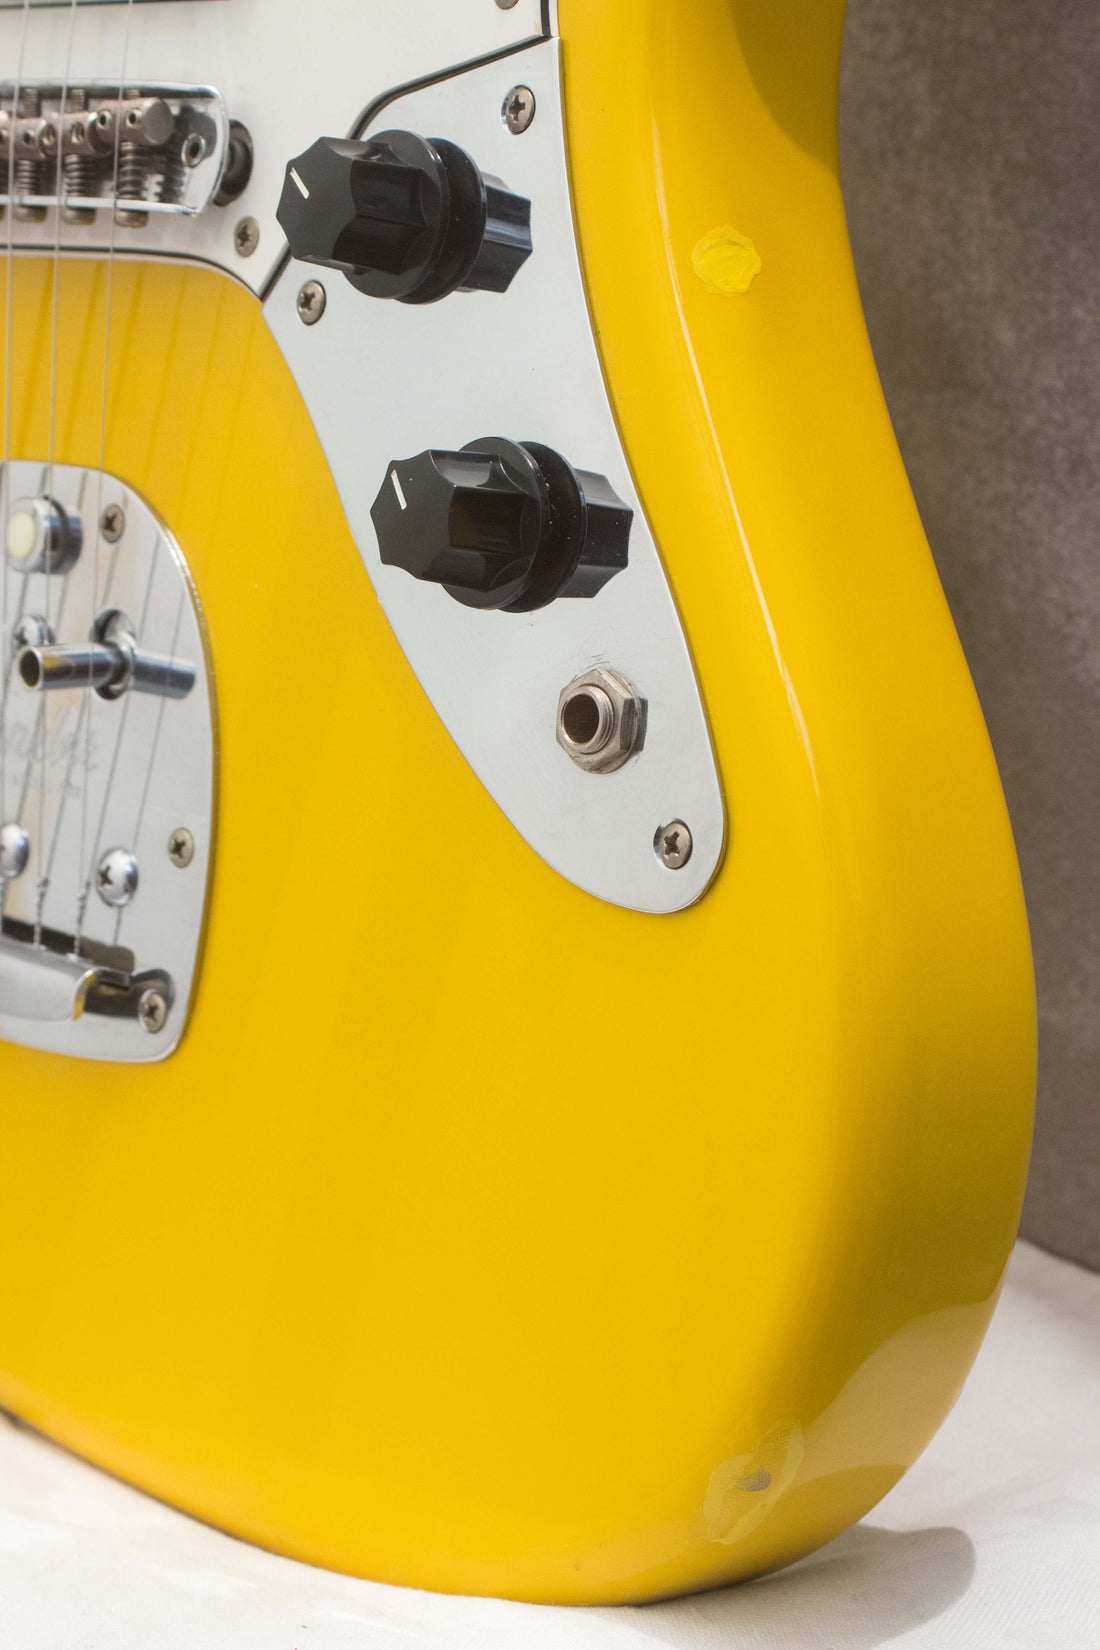 Fender Japan Jaguar JG66-85 Rebel Yellow 1998